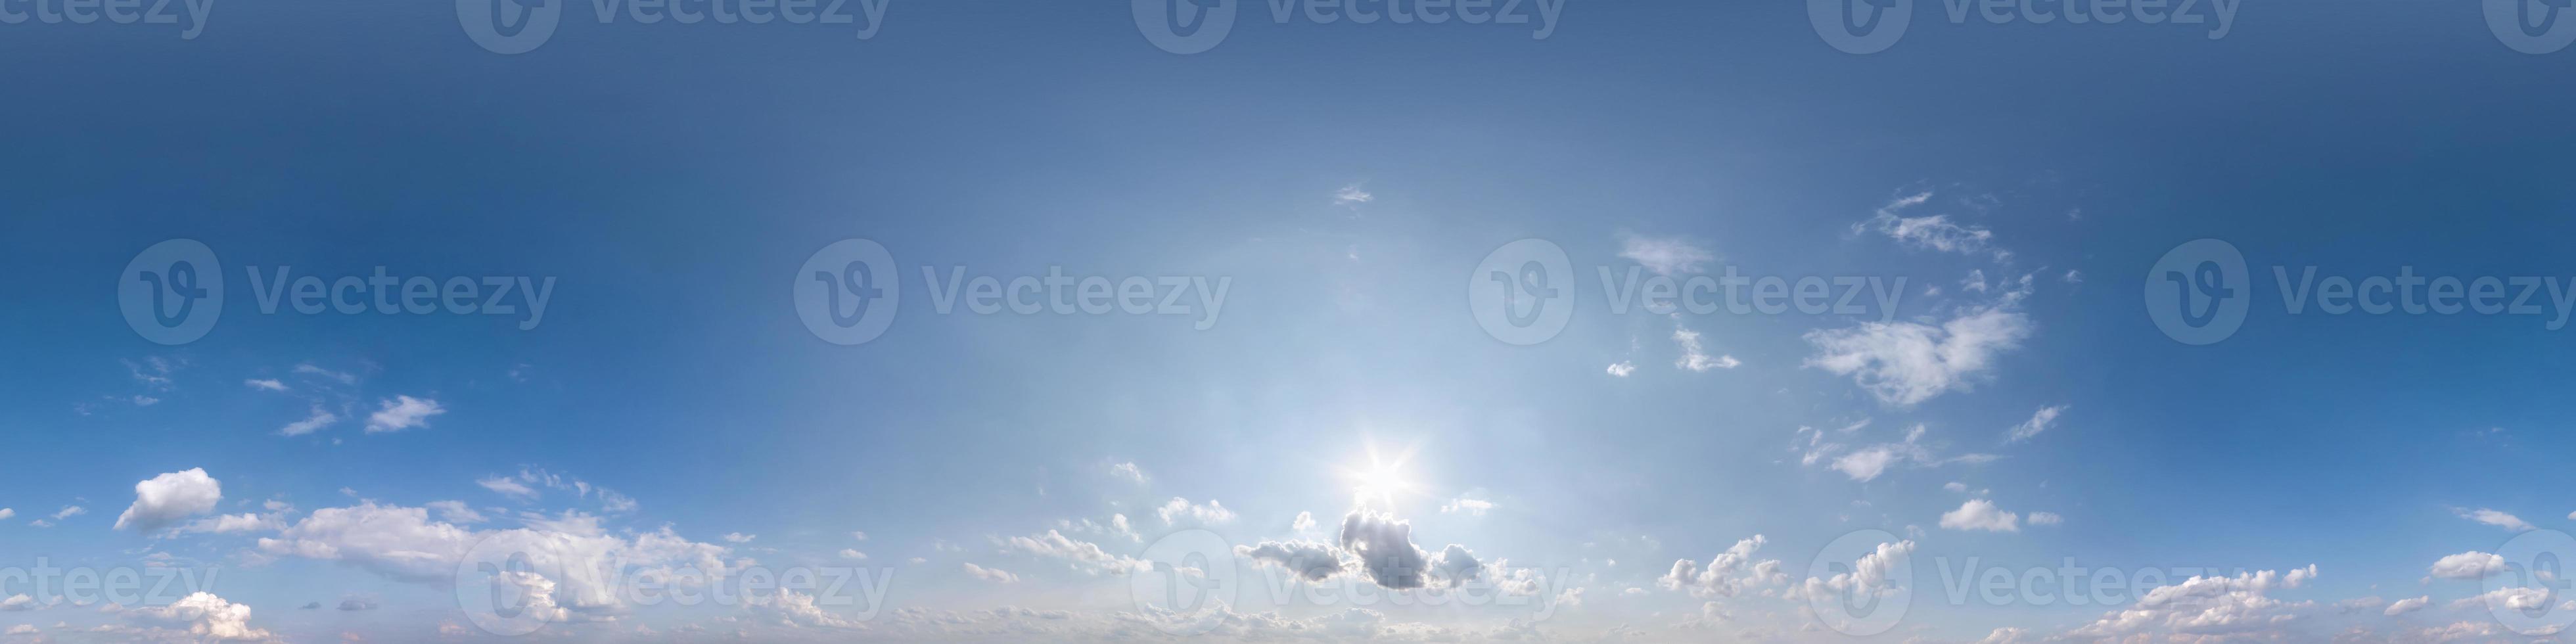 senza soluzione di continuità blu cielo hdri panorama 360 gradi angolo Visualizza con zenit e bellissimo nuvole per uso nel 3d grafica come cielo cupola o modificare fuco sparo. uso per cielo sostituzione foto